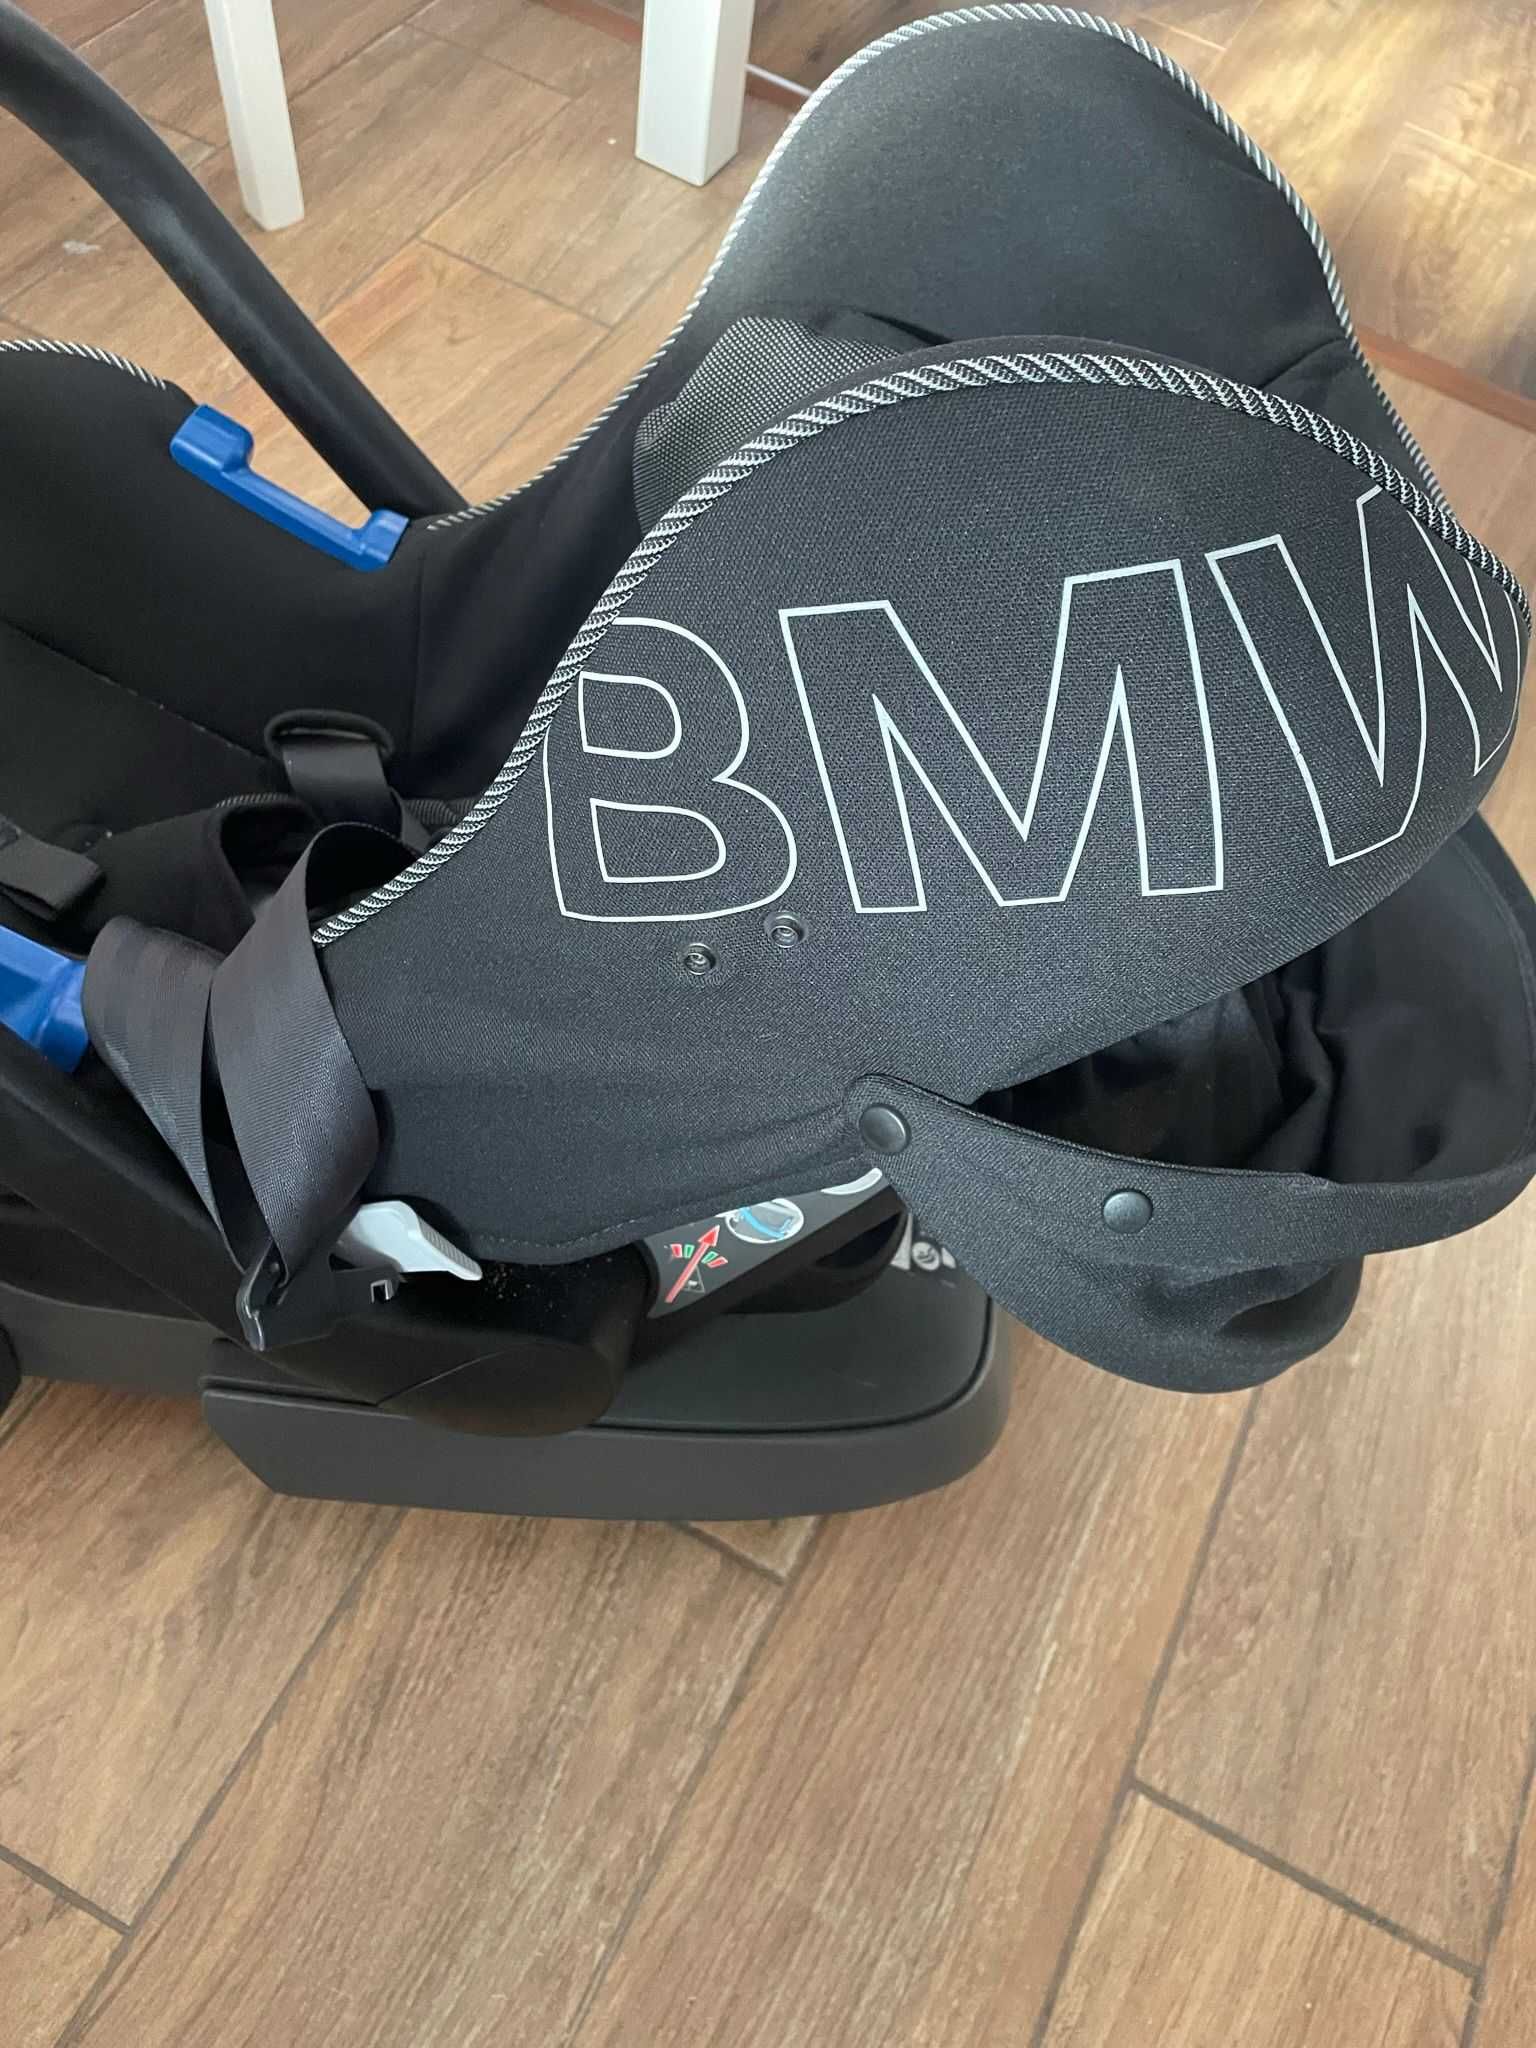 Scaun  auto bebelus BMW  isofix